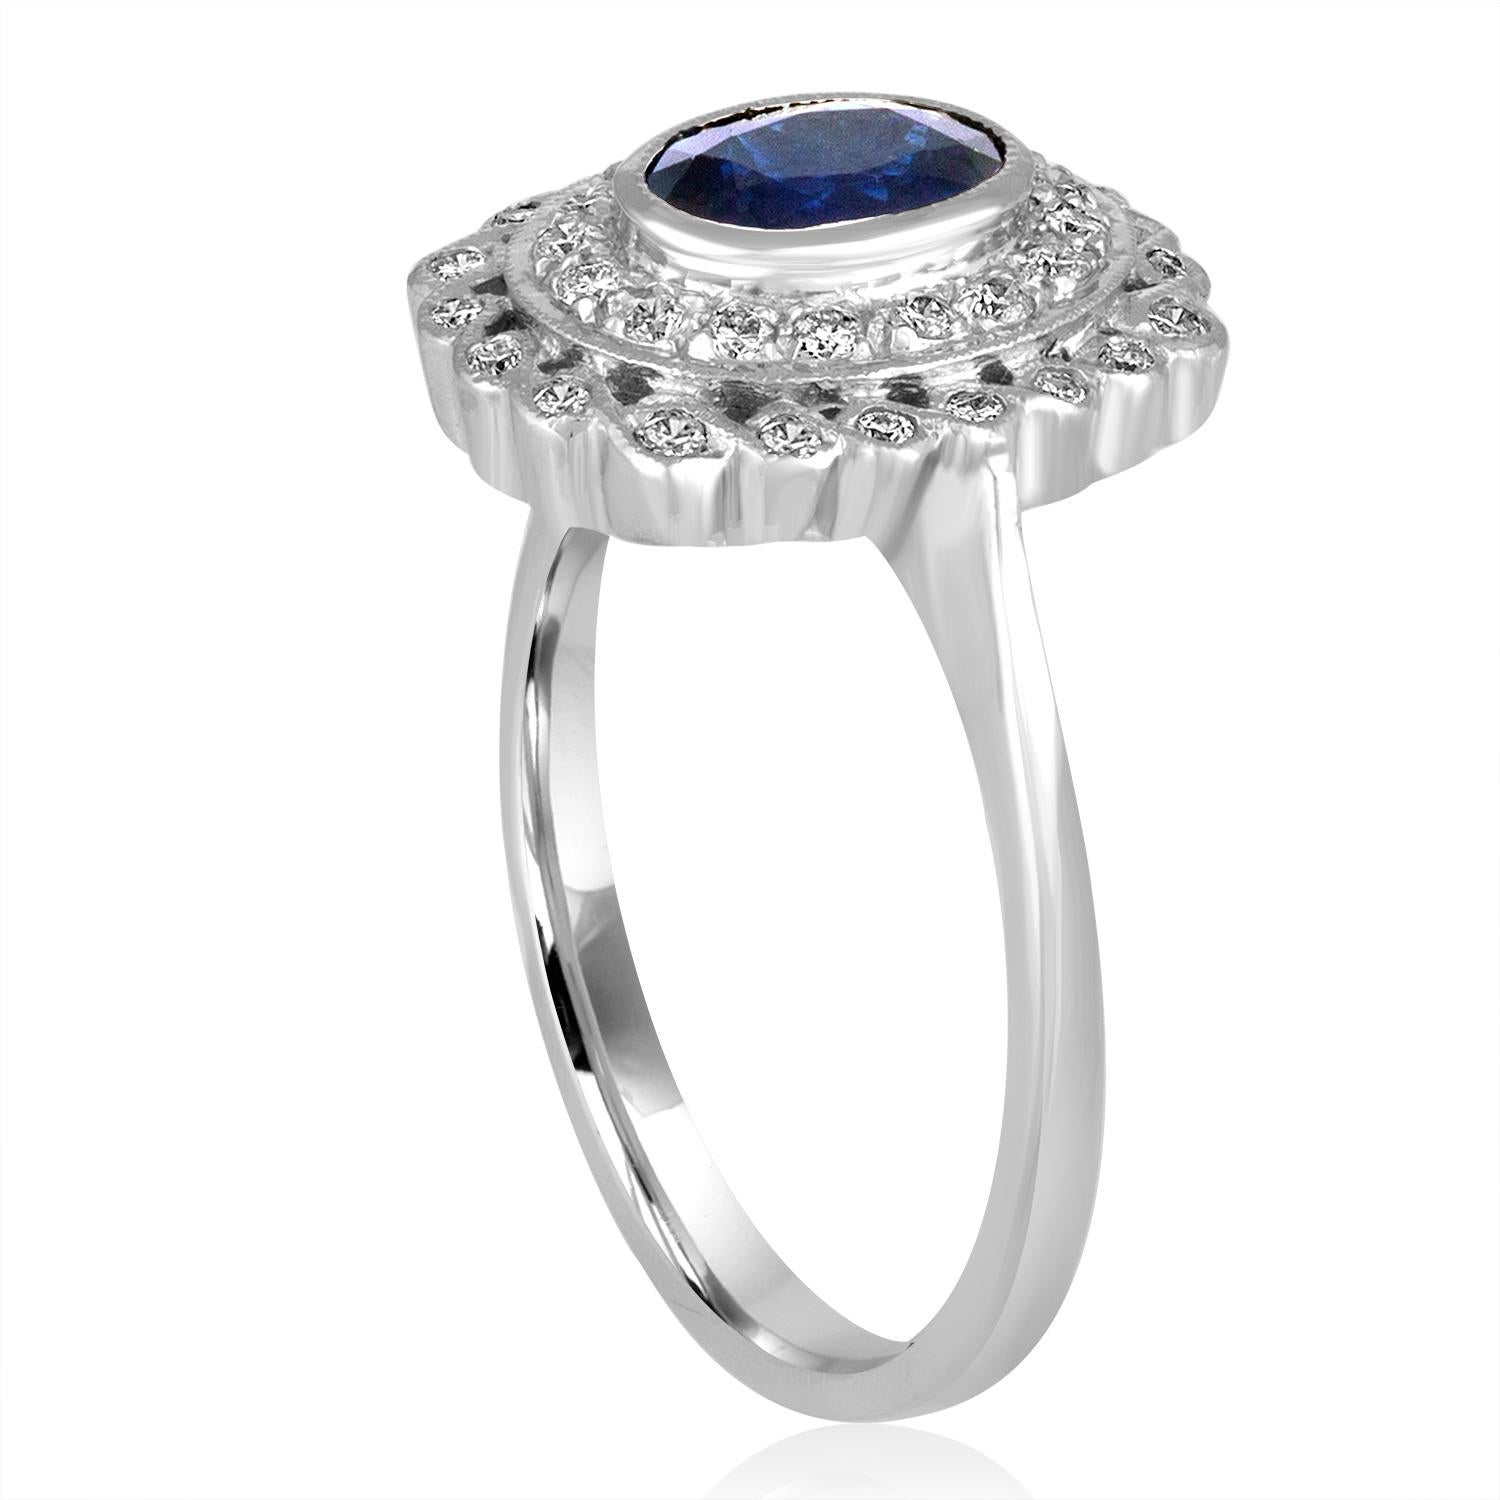 Ring im Stil des Art Deco Revival.
Der Ring ist 18K Weißgold
Es sind 0,50 Karat in Diamanten H SI
Der Mittelstein ist ein ovaler blauer Saphir 0,76 Karat
Der Ring ist eine Größe 6,75, sizable.
Der Ring misst 0,50